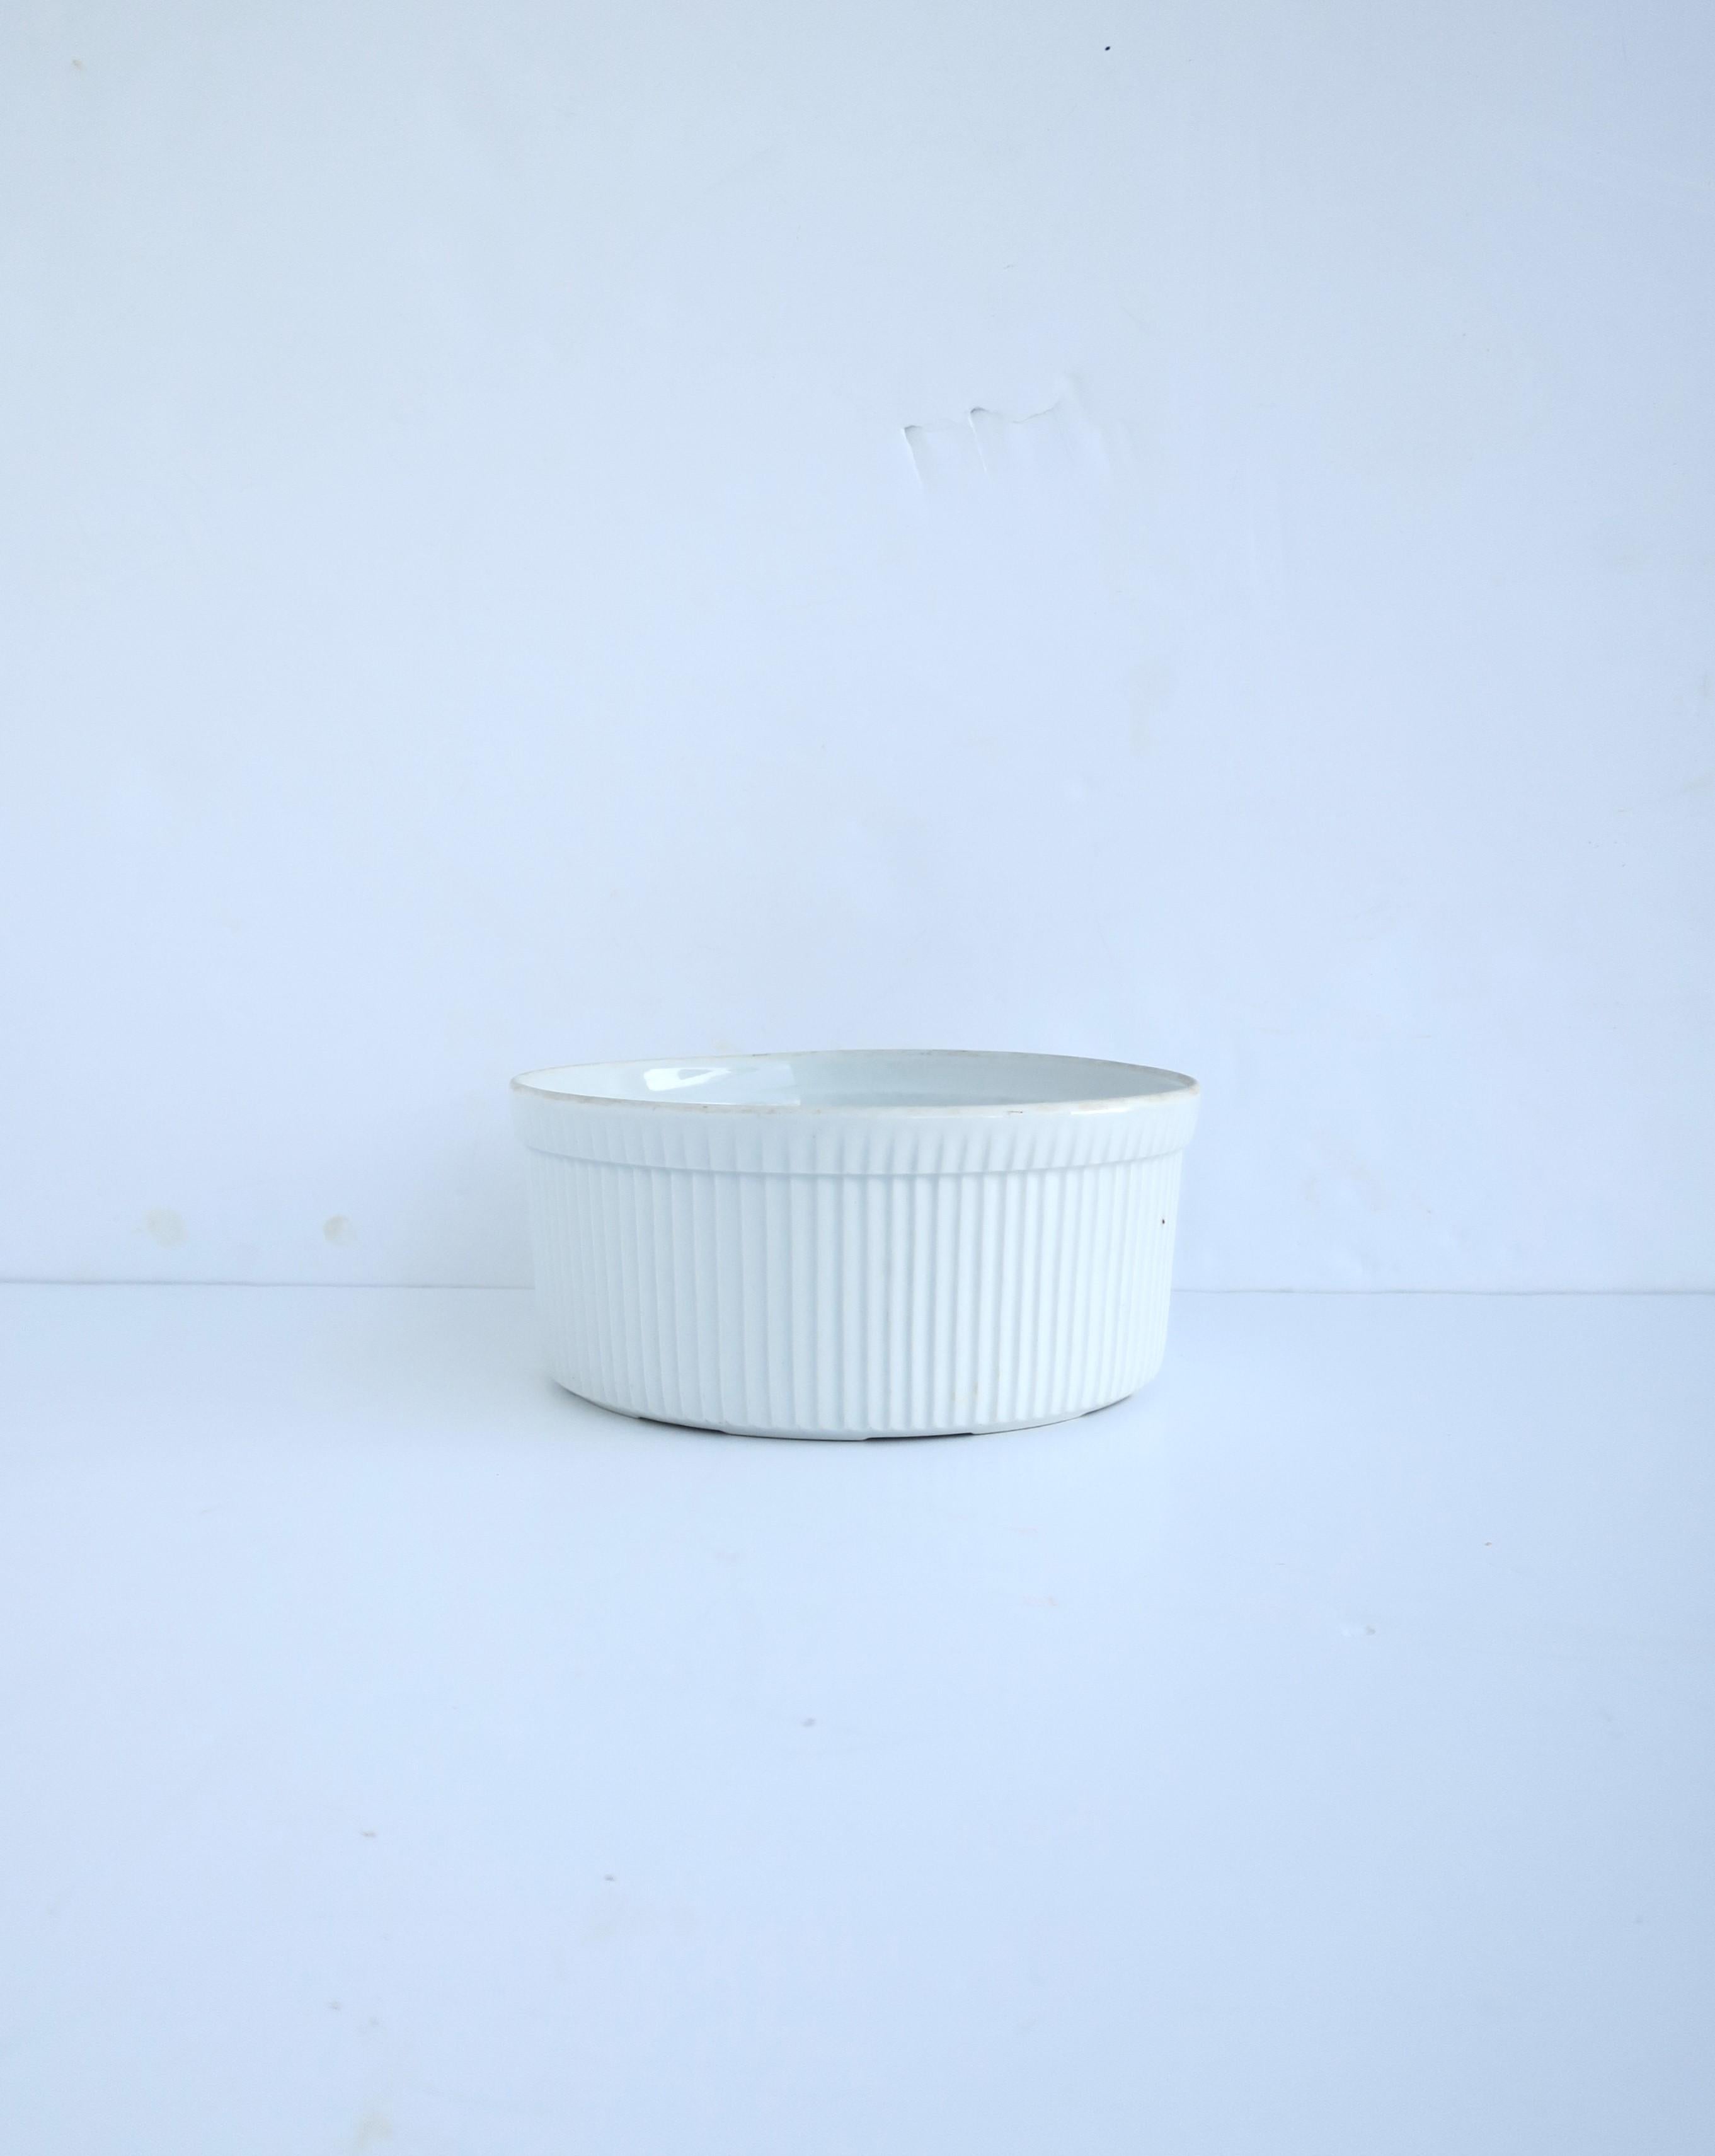 Französische Schale aus weißem Porzellan mit kanneliertem Dekor, Mitte 20. Jahrhundert, Frankreich. Eine schlichte, weiße Porzellanschale mit geriffeltem Dekor auf der Außenseite. Ideal zum Servieren oder Kochen/Backen. Made in France, wie auf der